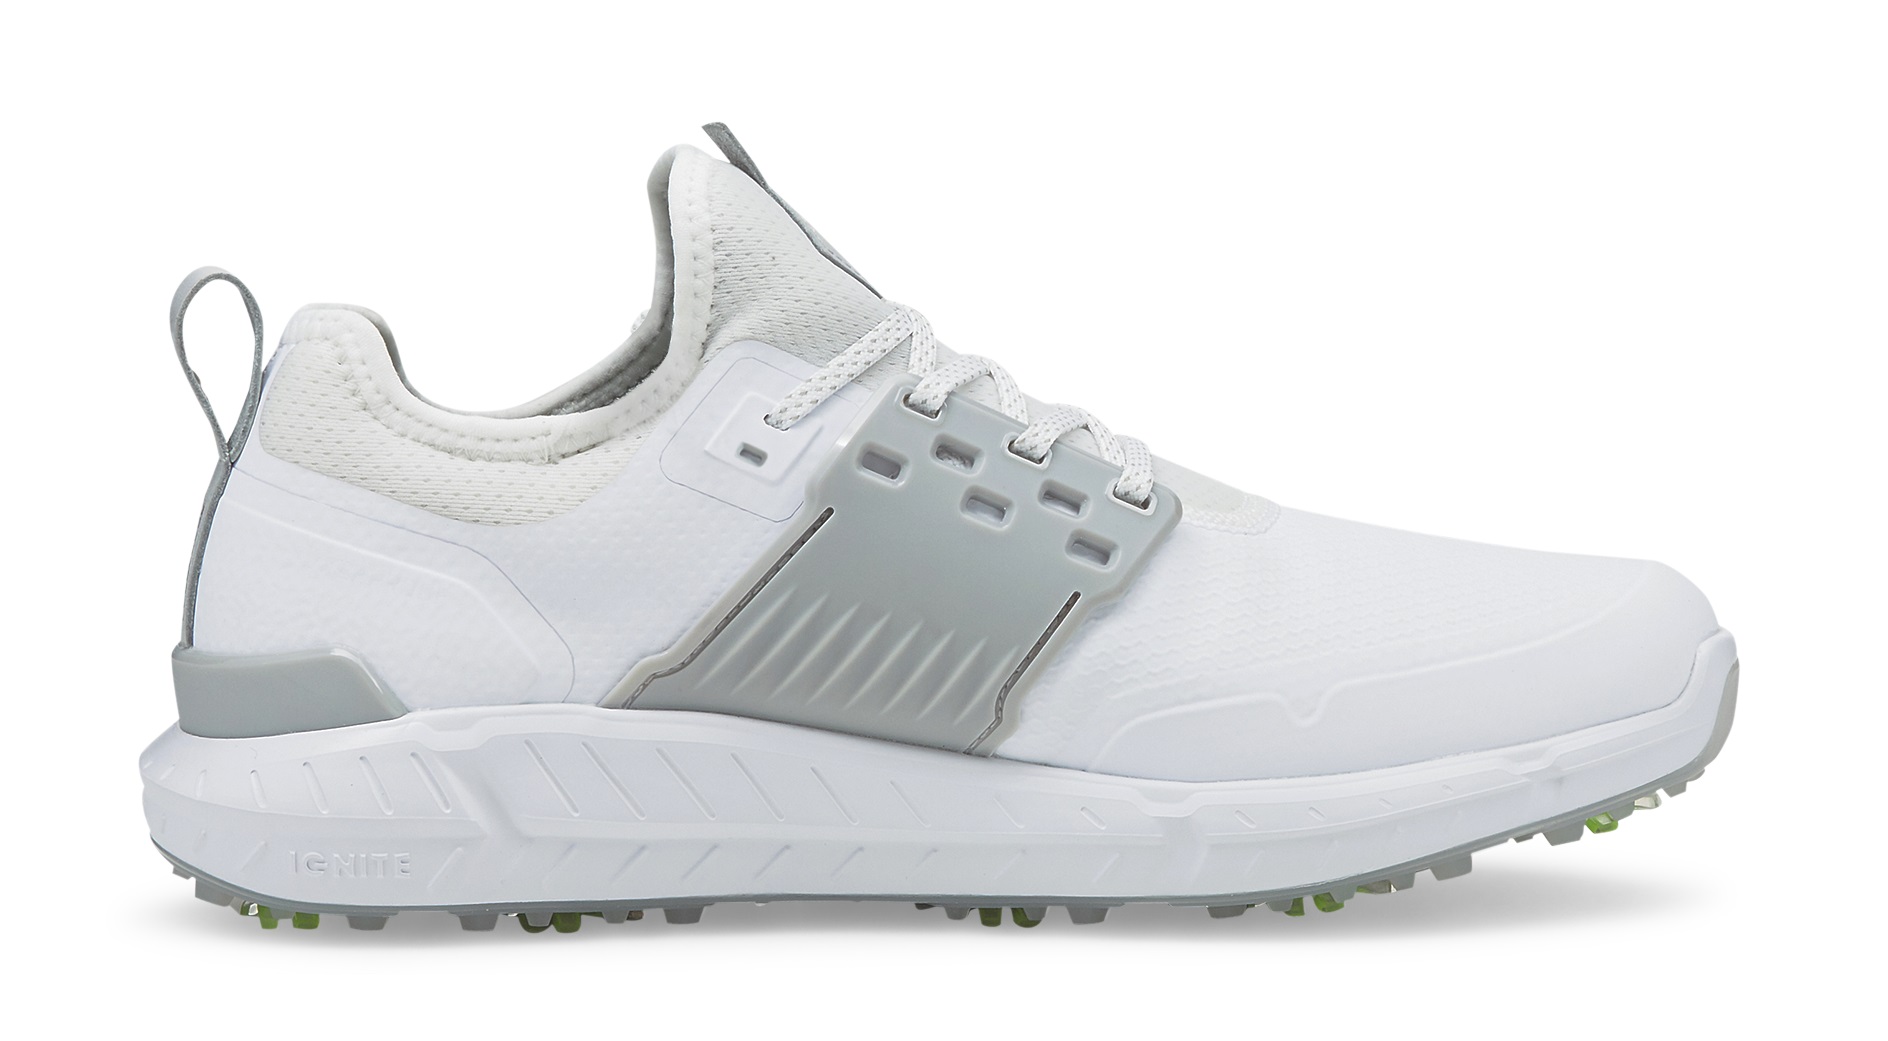 Puma Ignite Articulate White/Puma Silver/High Rise Men Golf Shoes Choose Size - image 1 of 2